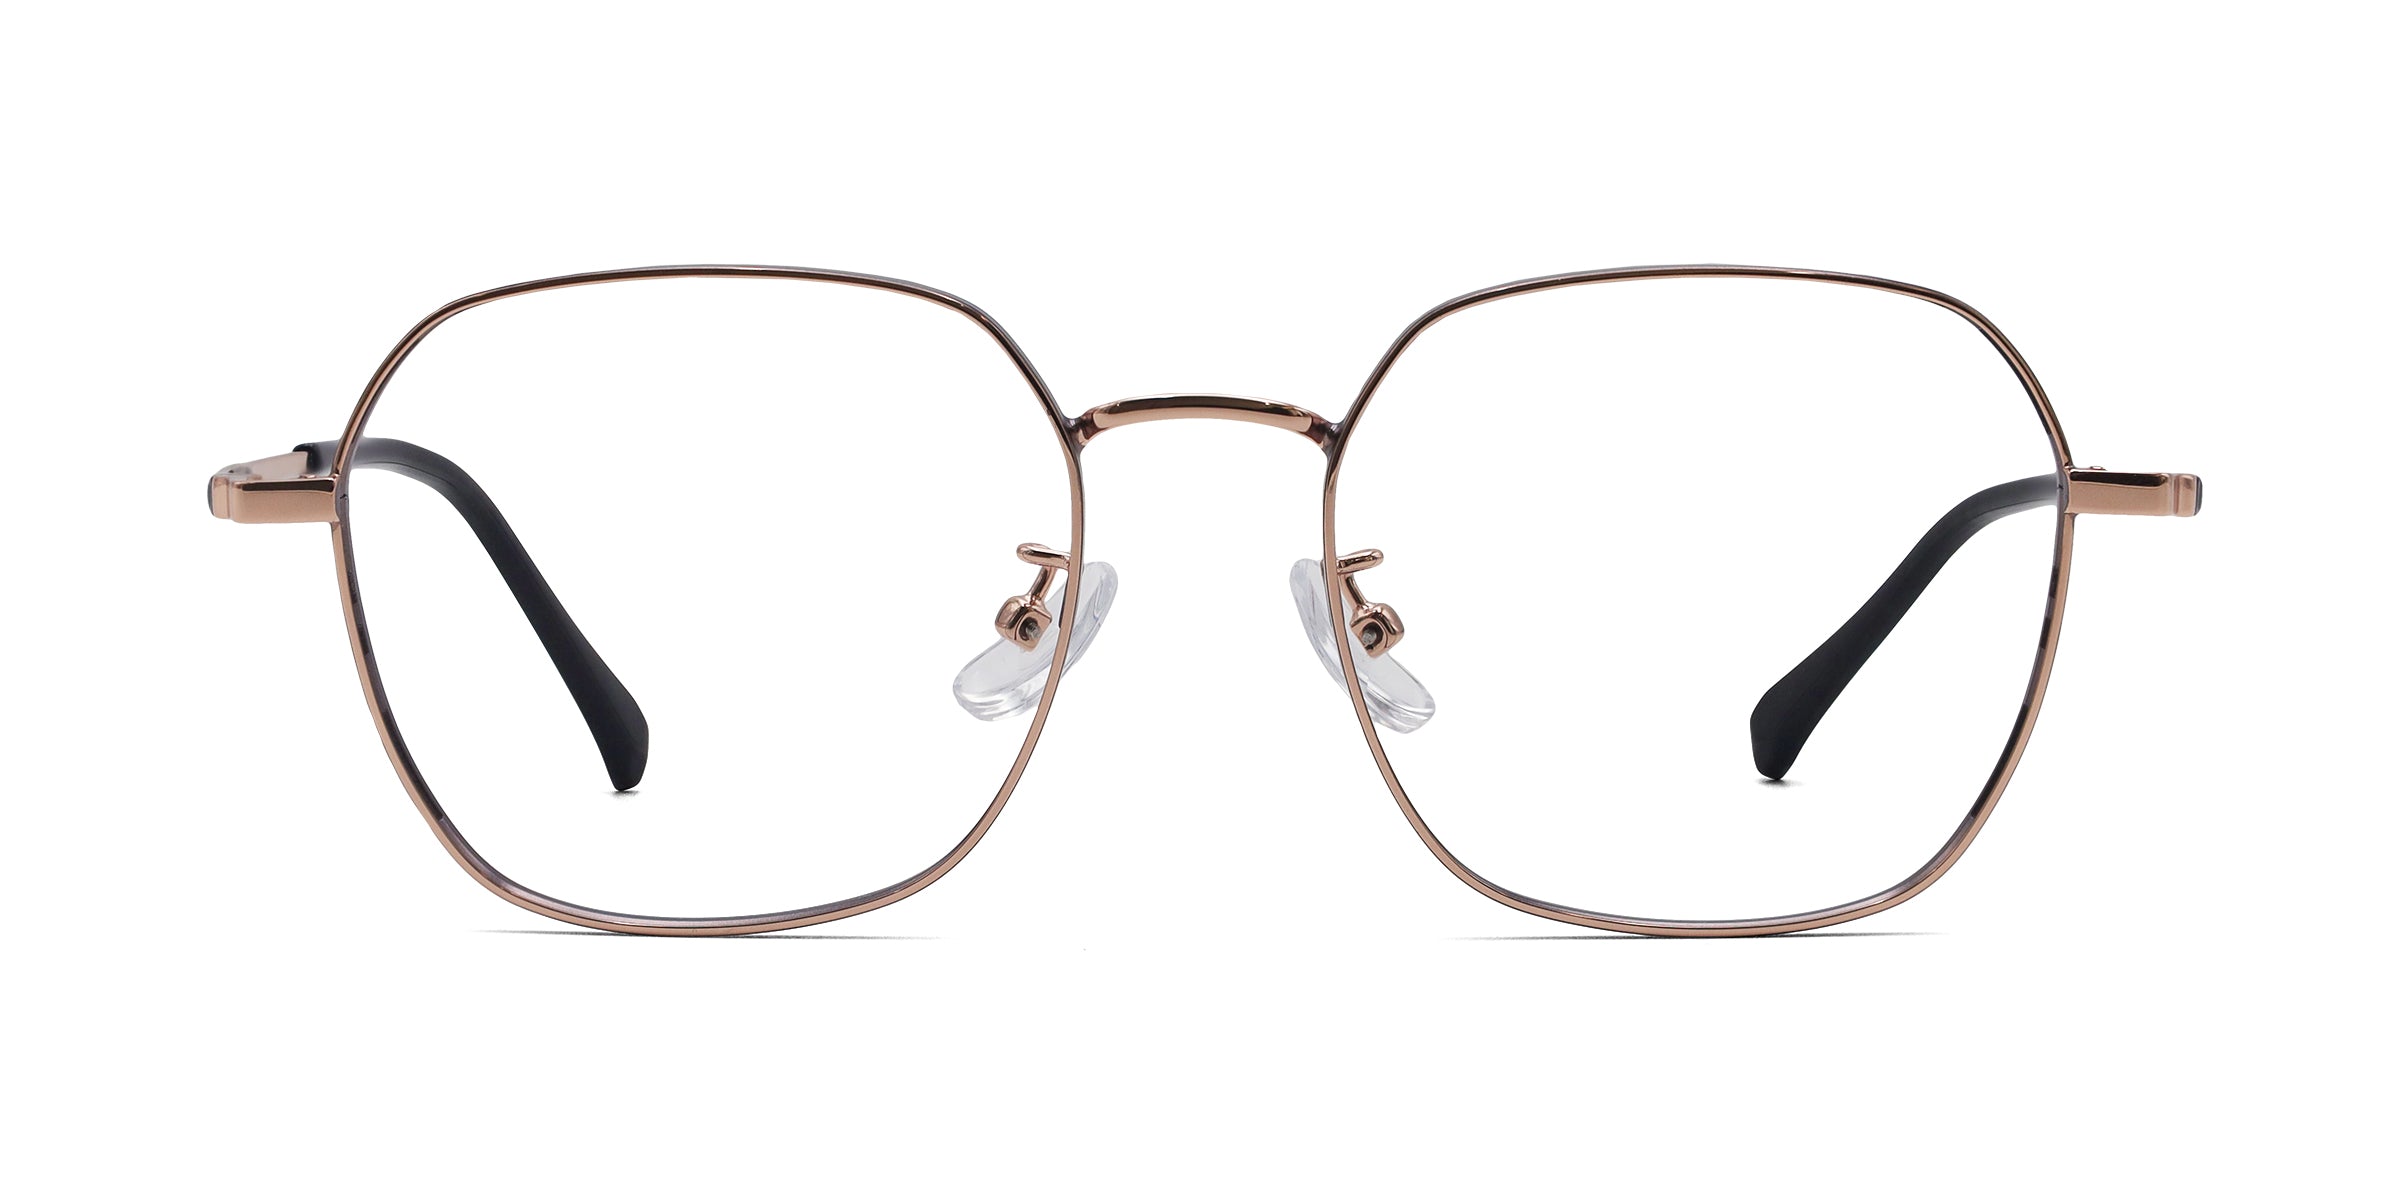 Aesthetic Glasses - Fashionable & Stylish Frames - Mouqy Eyewear